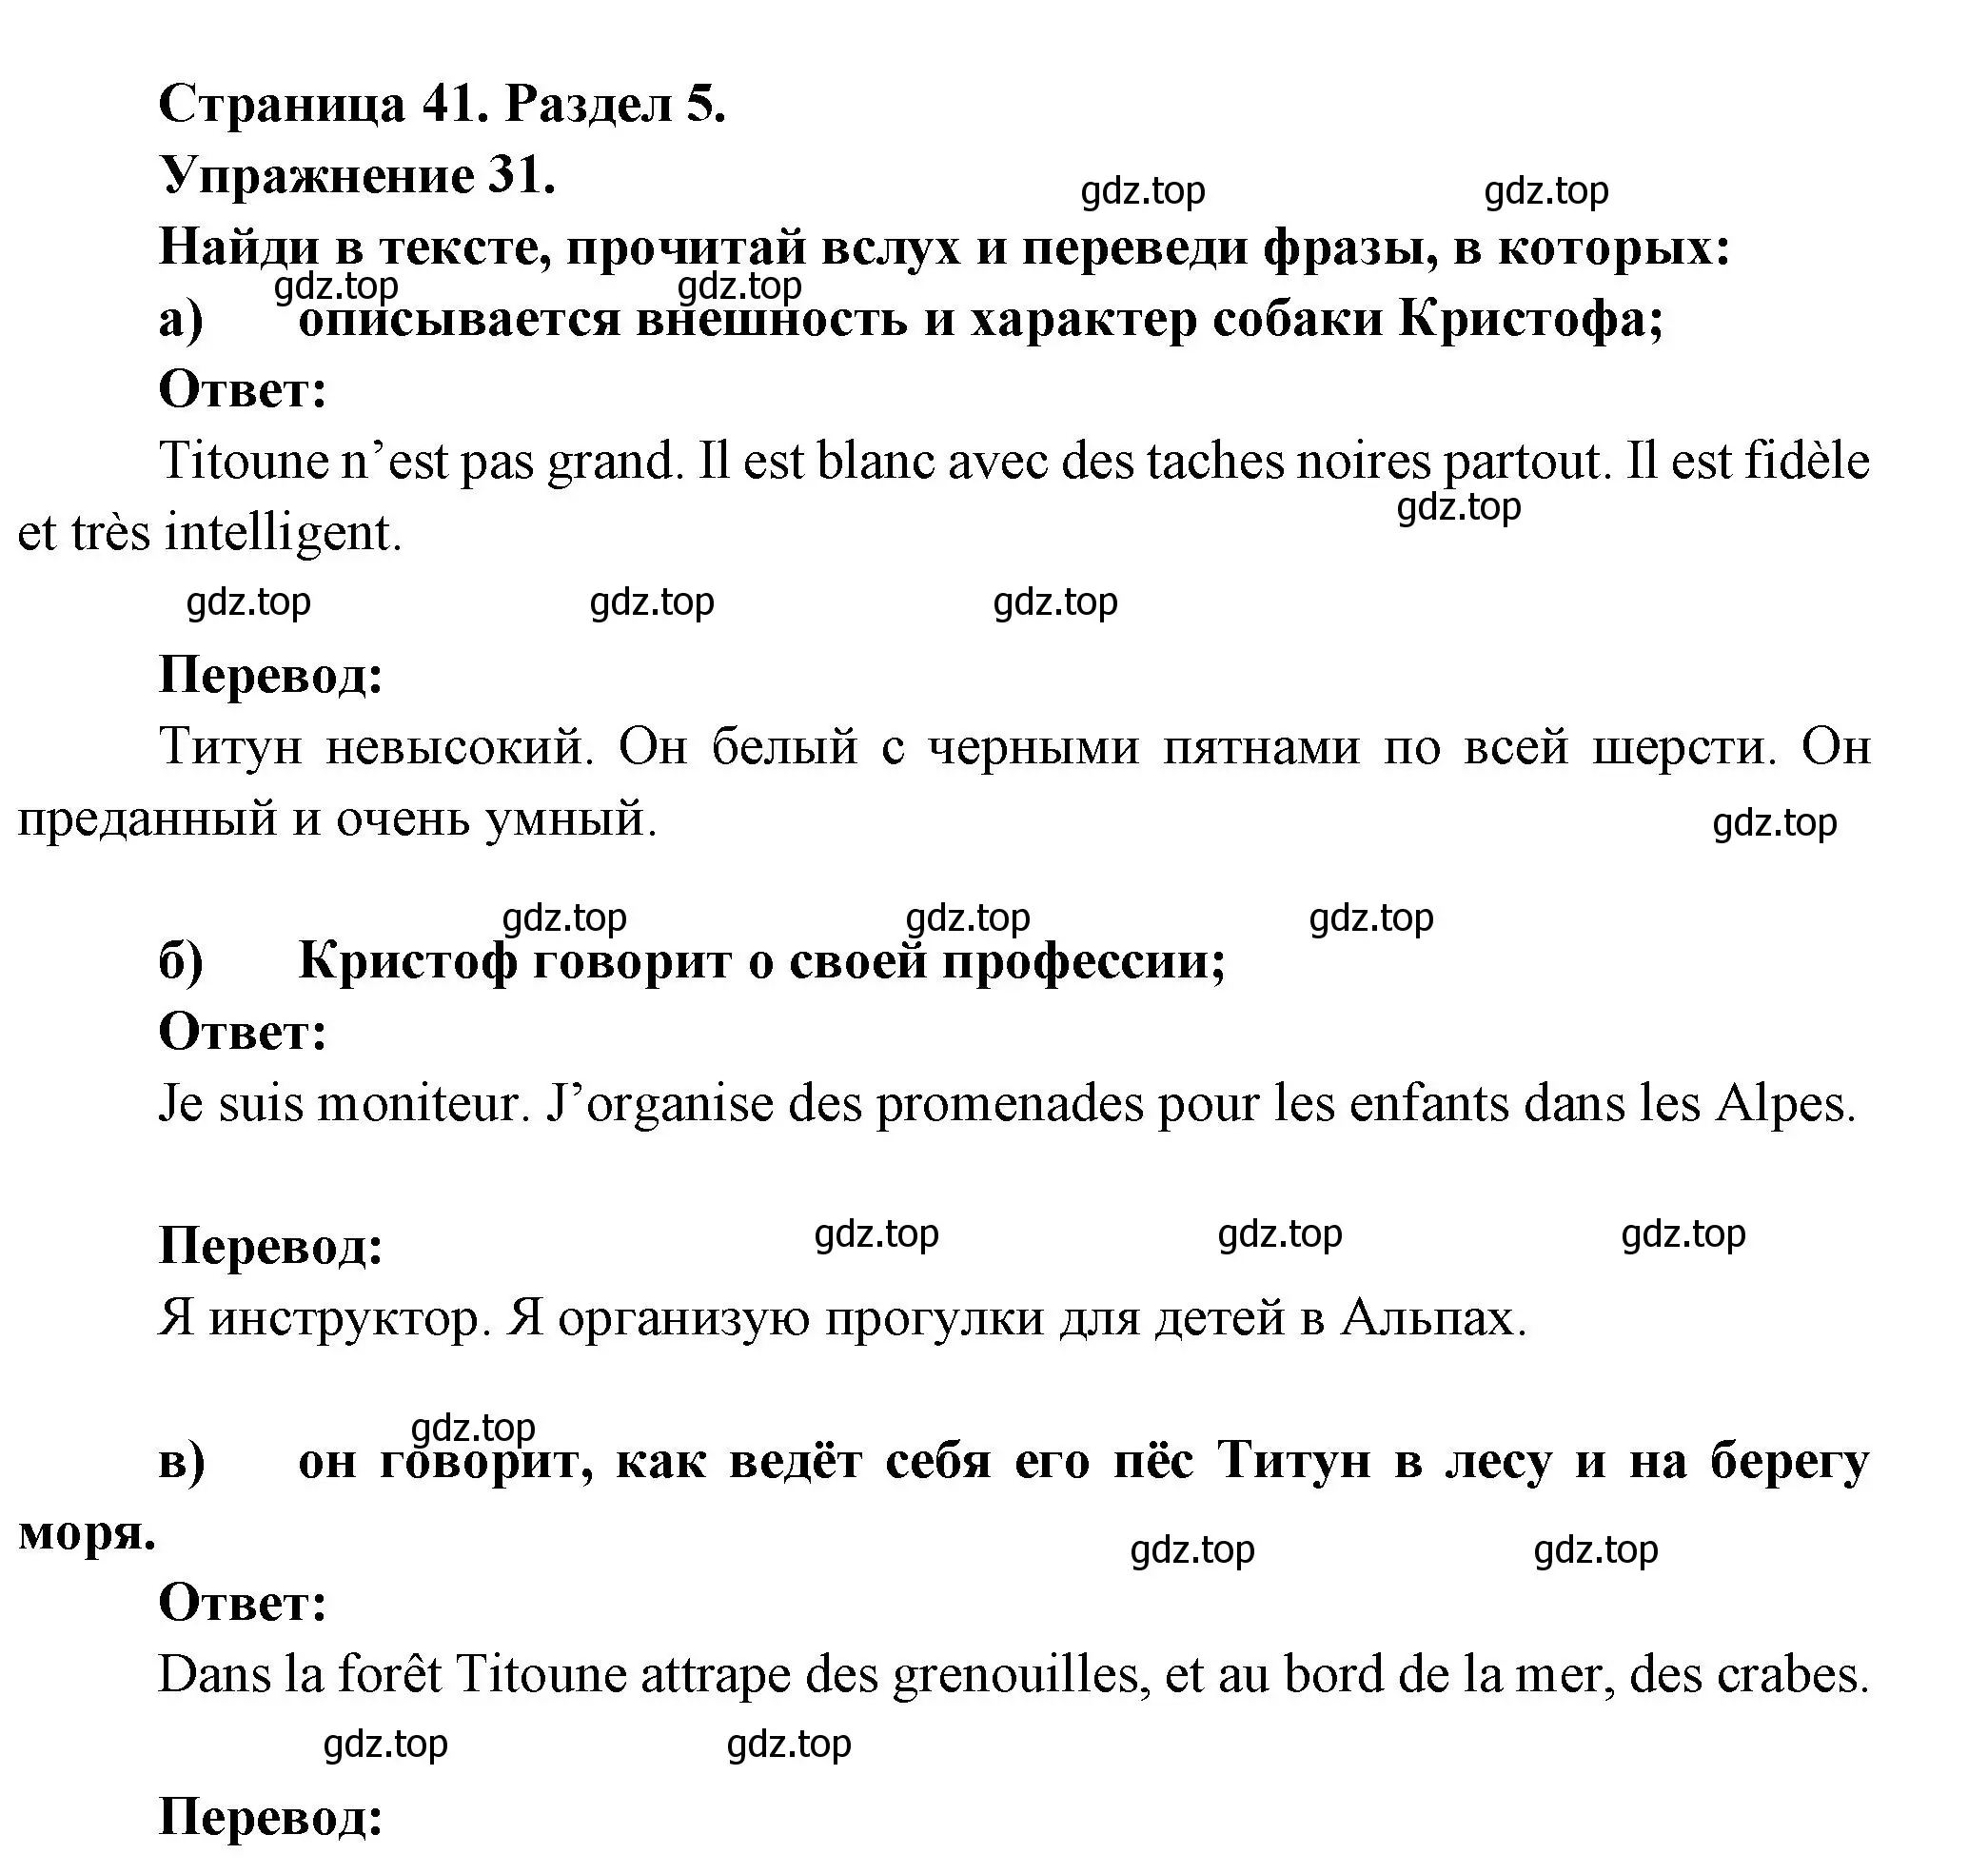 Решение номер 31 (страница 41) гдз по французскому языку 5 класс Береговская, Белосельская, учебник 2 часть